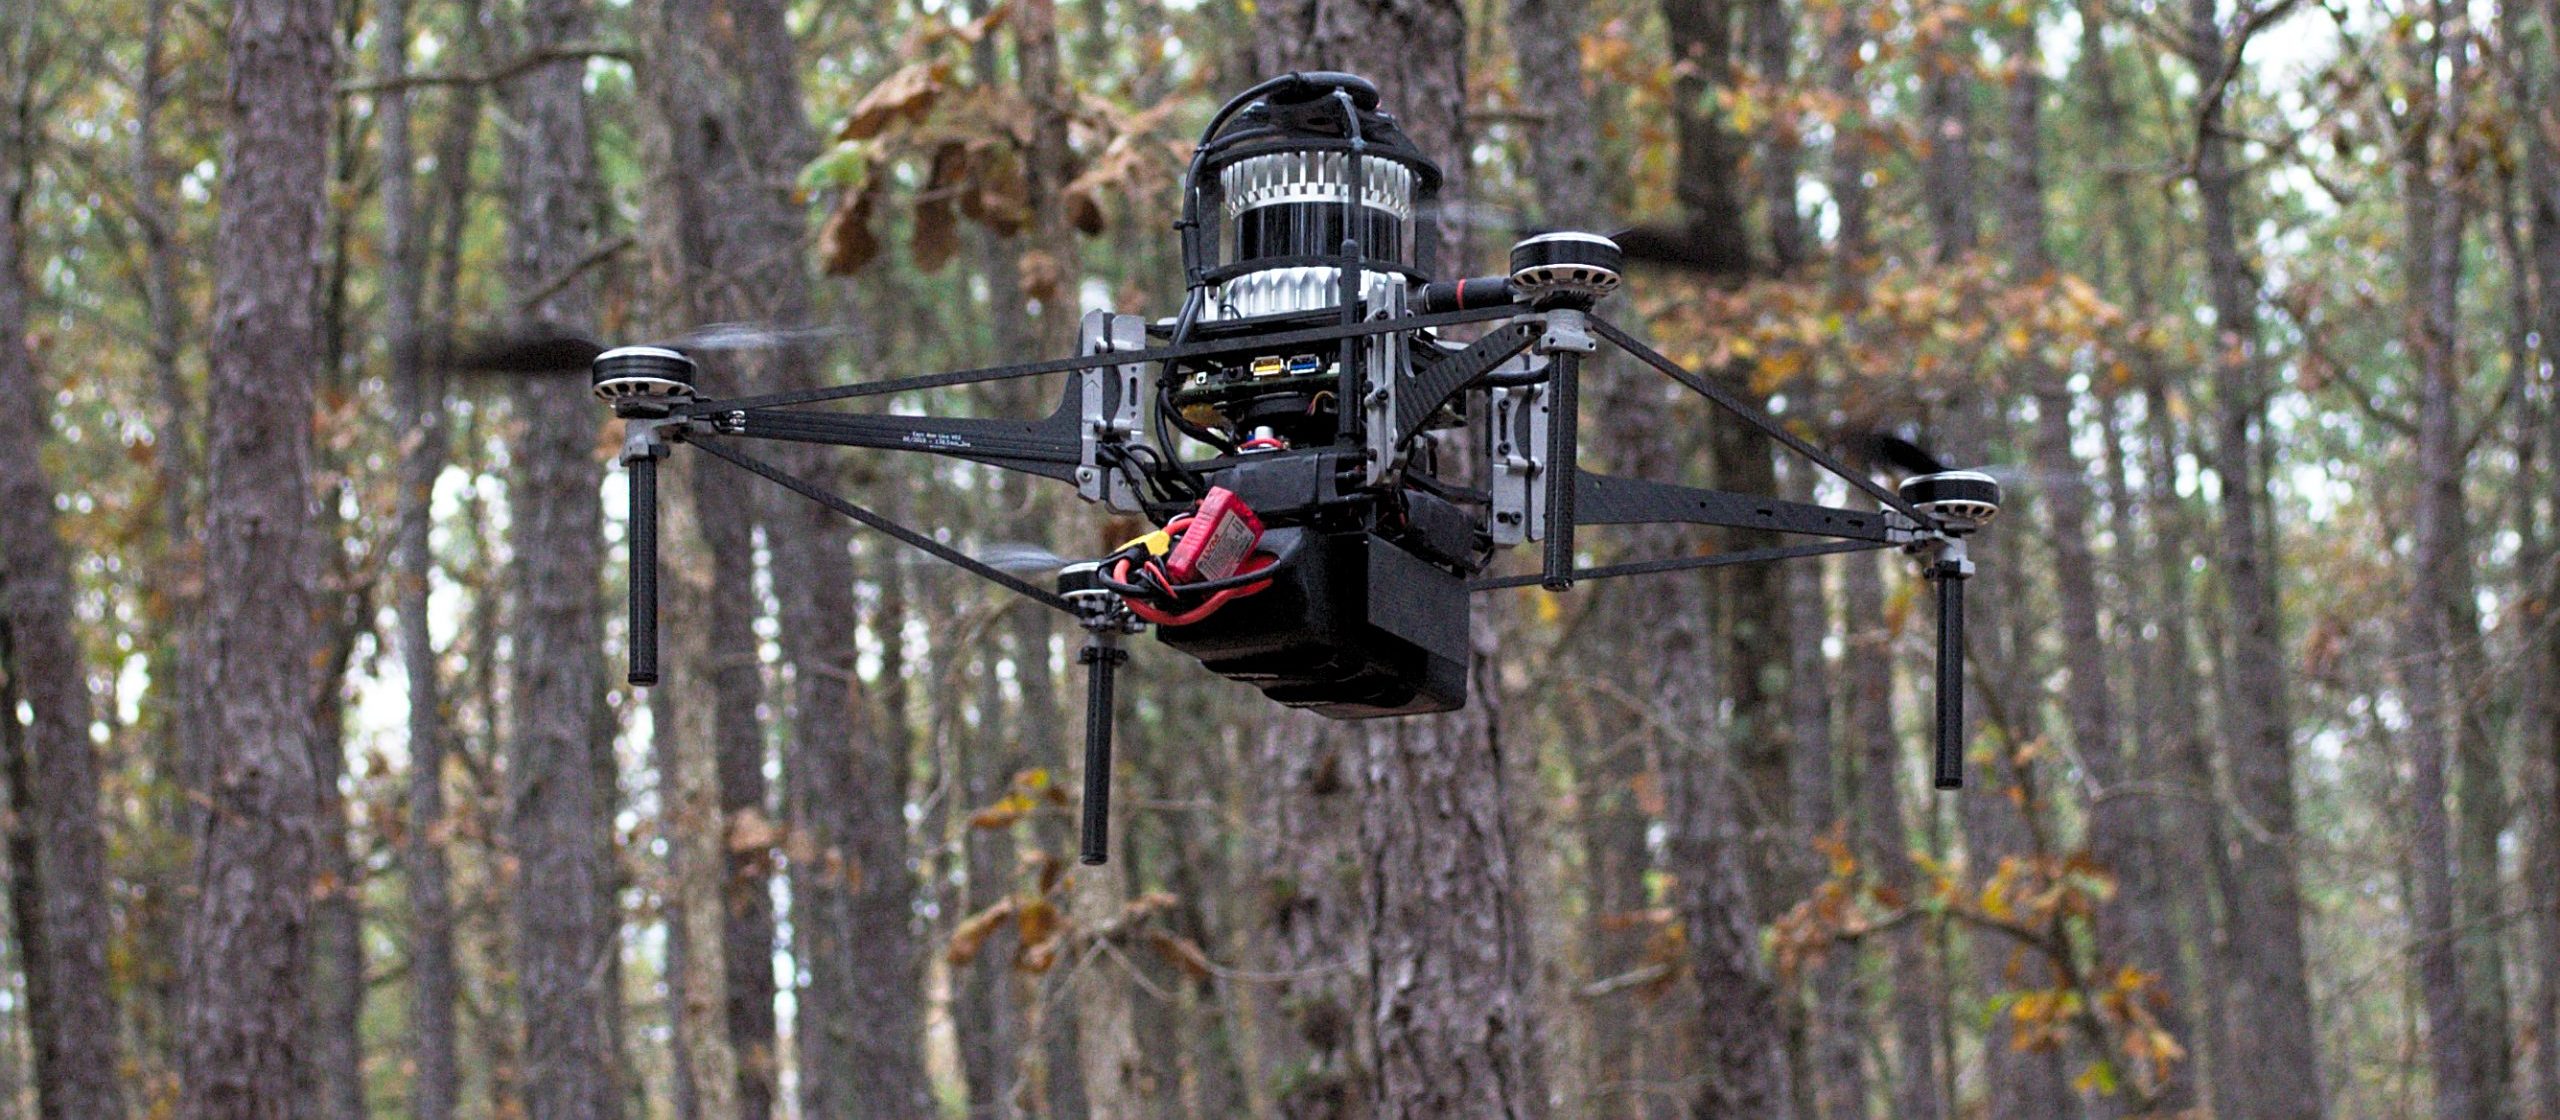 Drone que voa sozinho no meio de florestas pode ser aliado contra o desmatamento